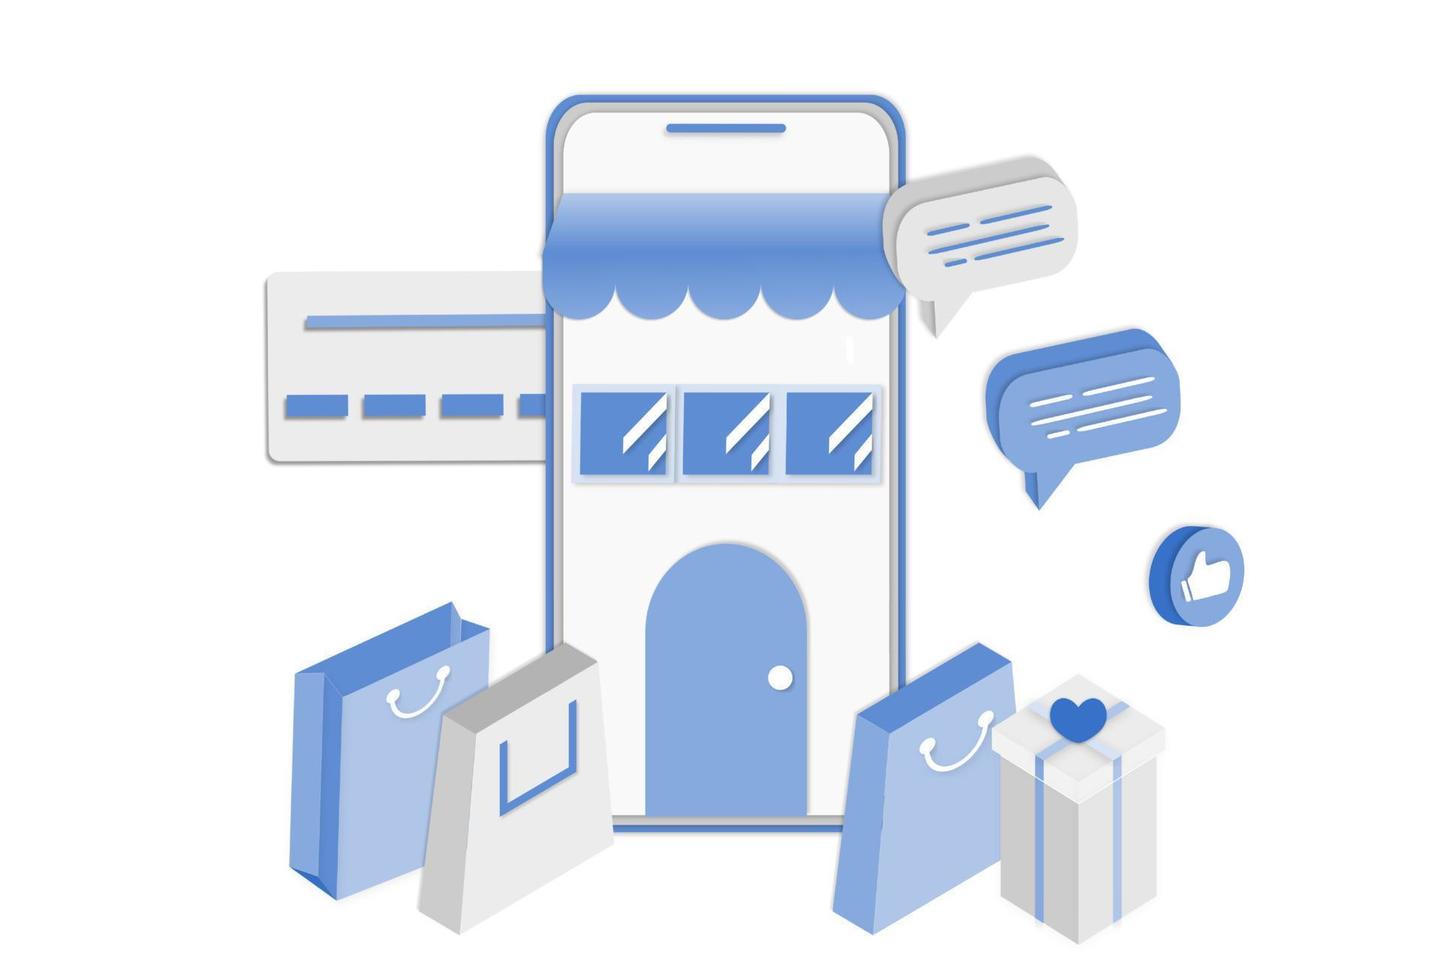 3d realistisk online shopping på webbplats eller mobilapplikation koncept för vektor marknadsföring och digital marknadsföring. isometrisk papperskonst för digital butikskampanj, onlinebetalning, leverans, försäljning, annonser.